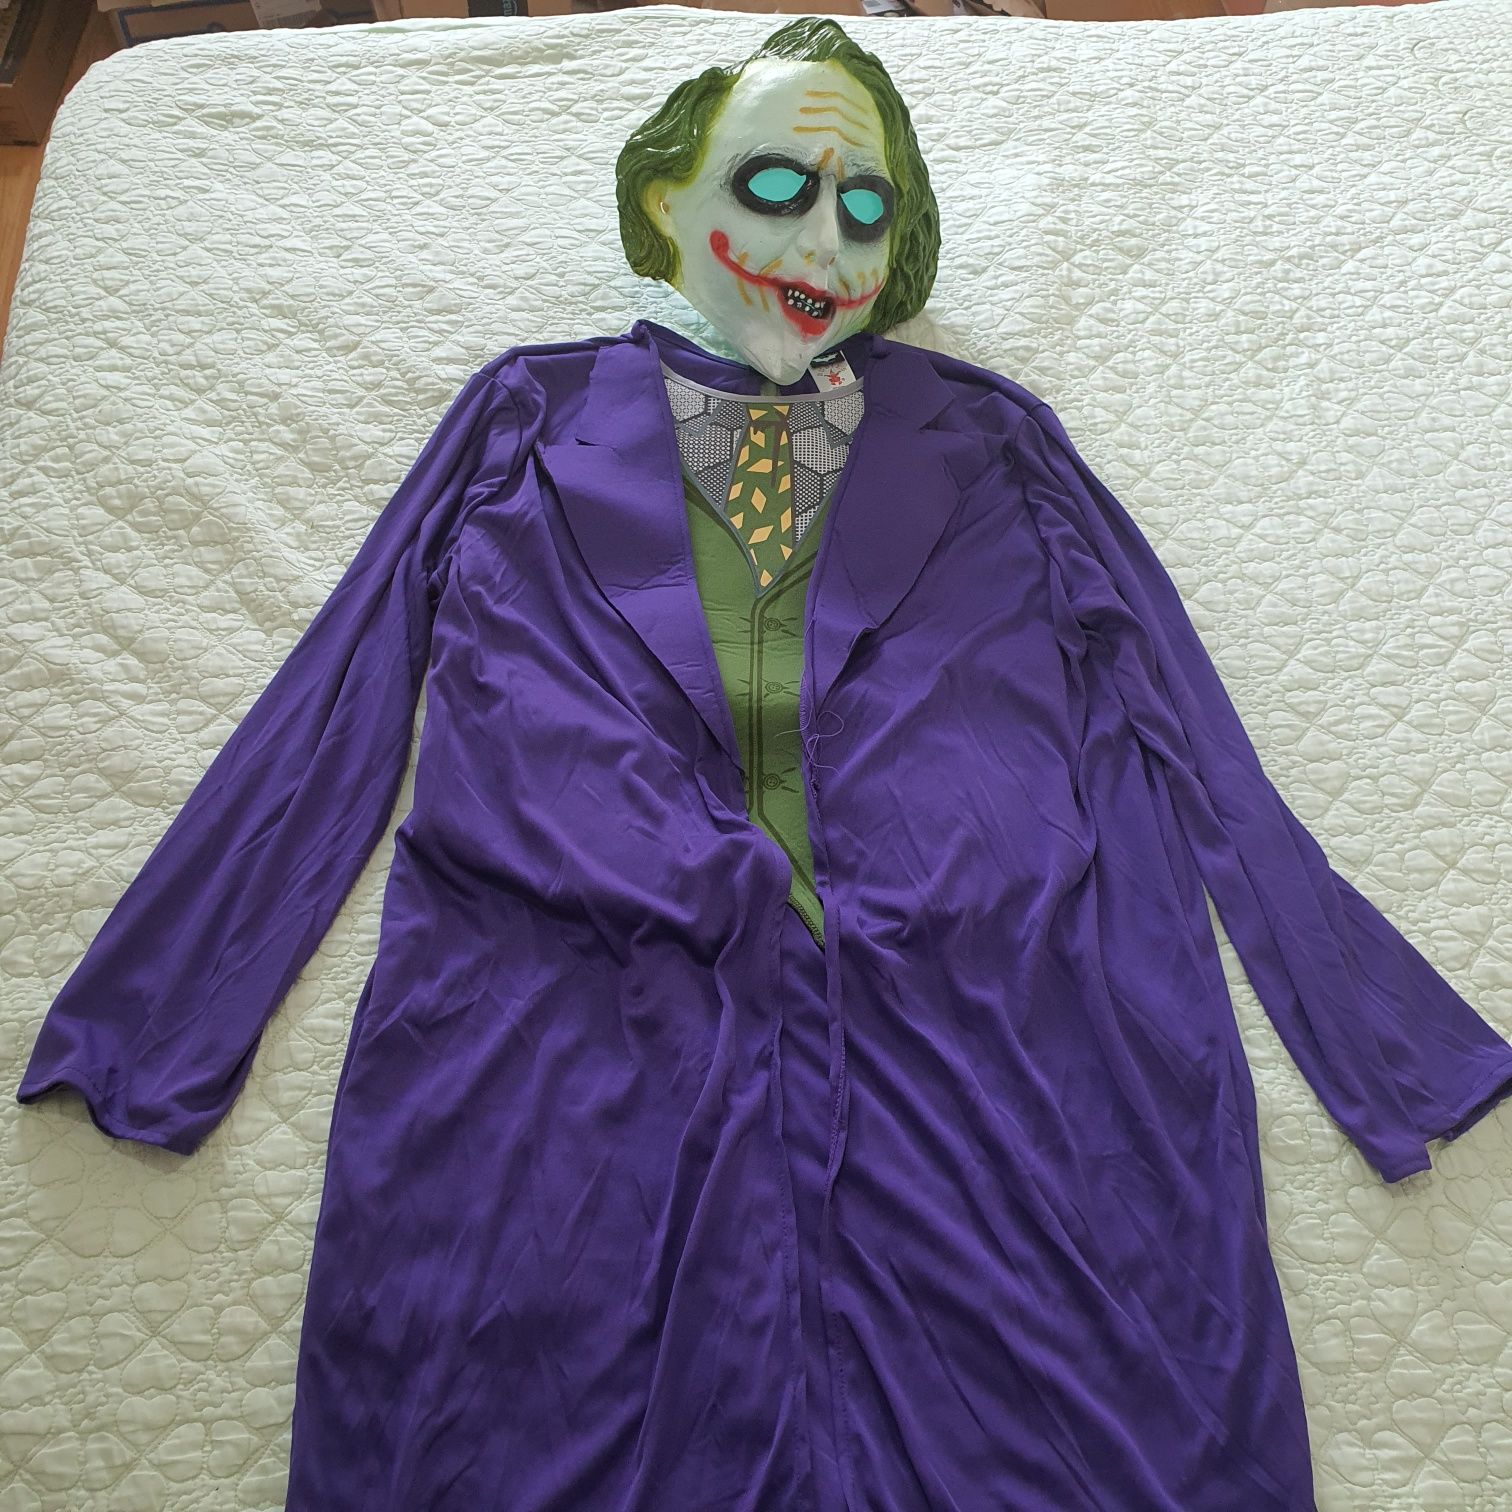 Costum de joker maturi, one size, reglabil se leagă cu un siret